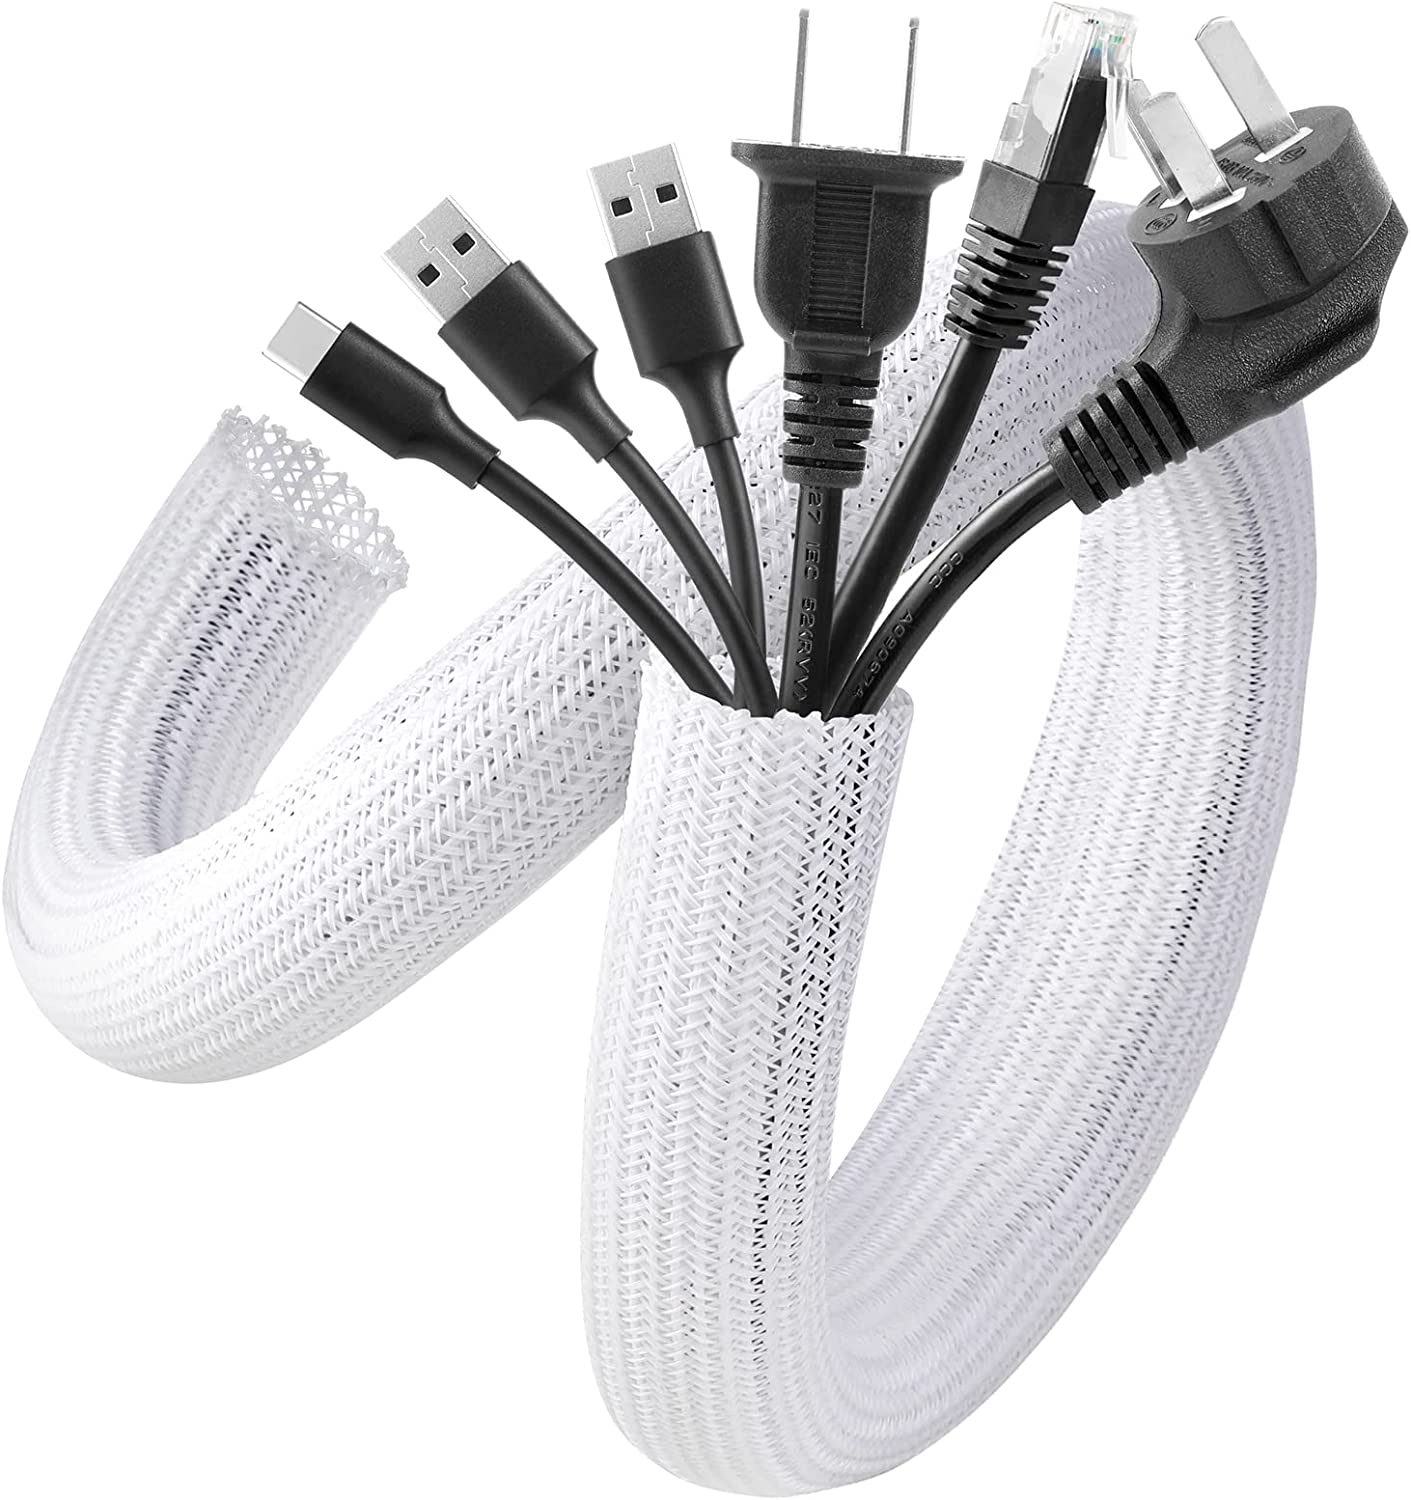 AGPTEK - Funda de cable blanca, paquete de 2 unidades de 5 pies a 1.2 pulgadas, sistema de gestión de cables para escritorio, PC, TV, computadora, proyector de computadora, protección y organización, hogar, teatro y oficina, color blanco